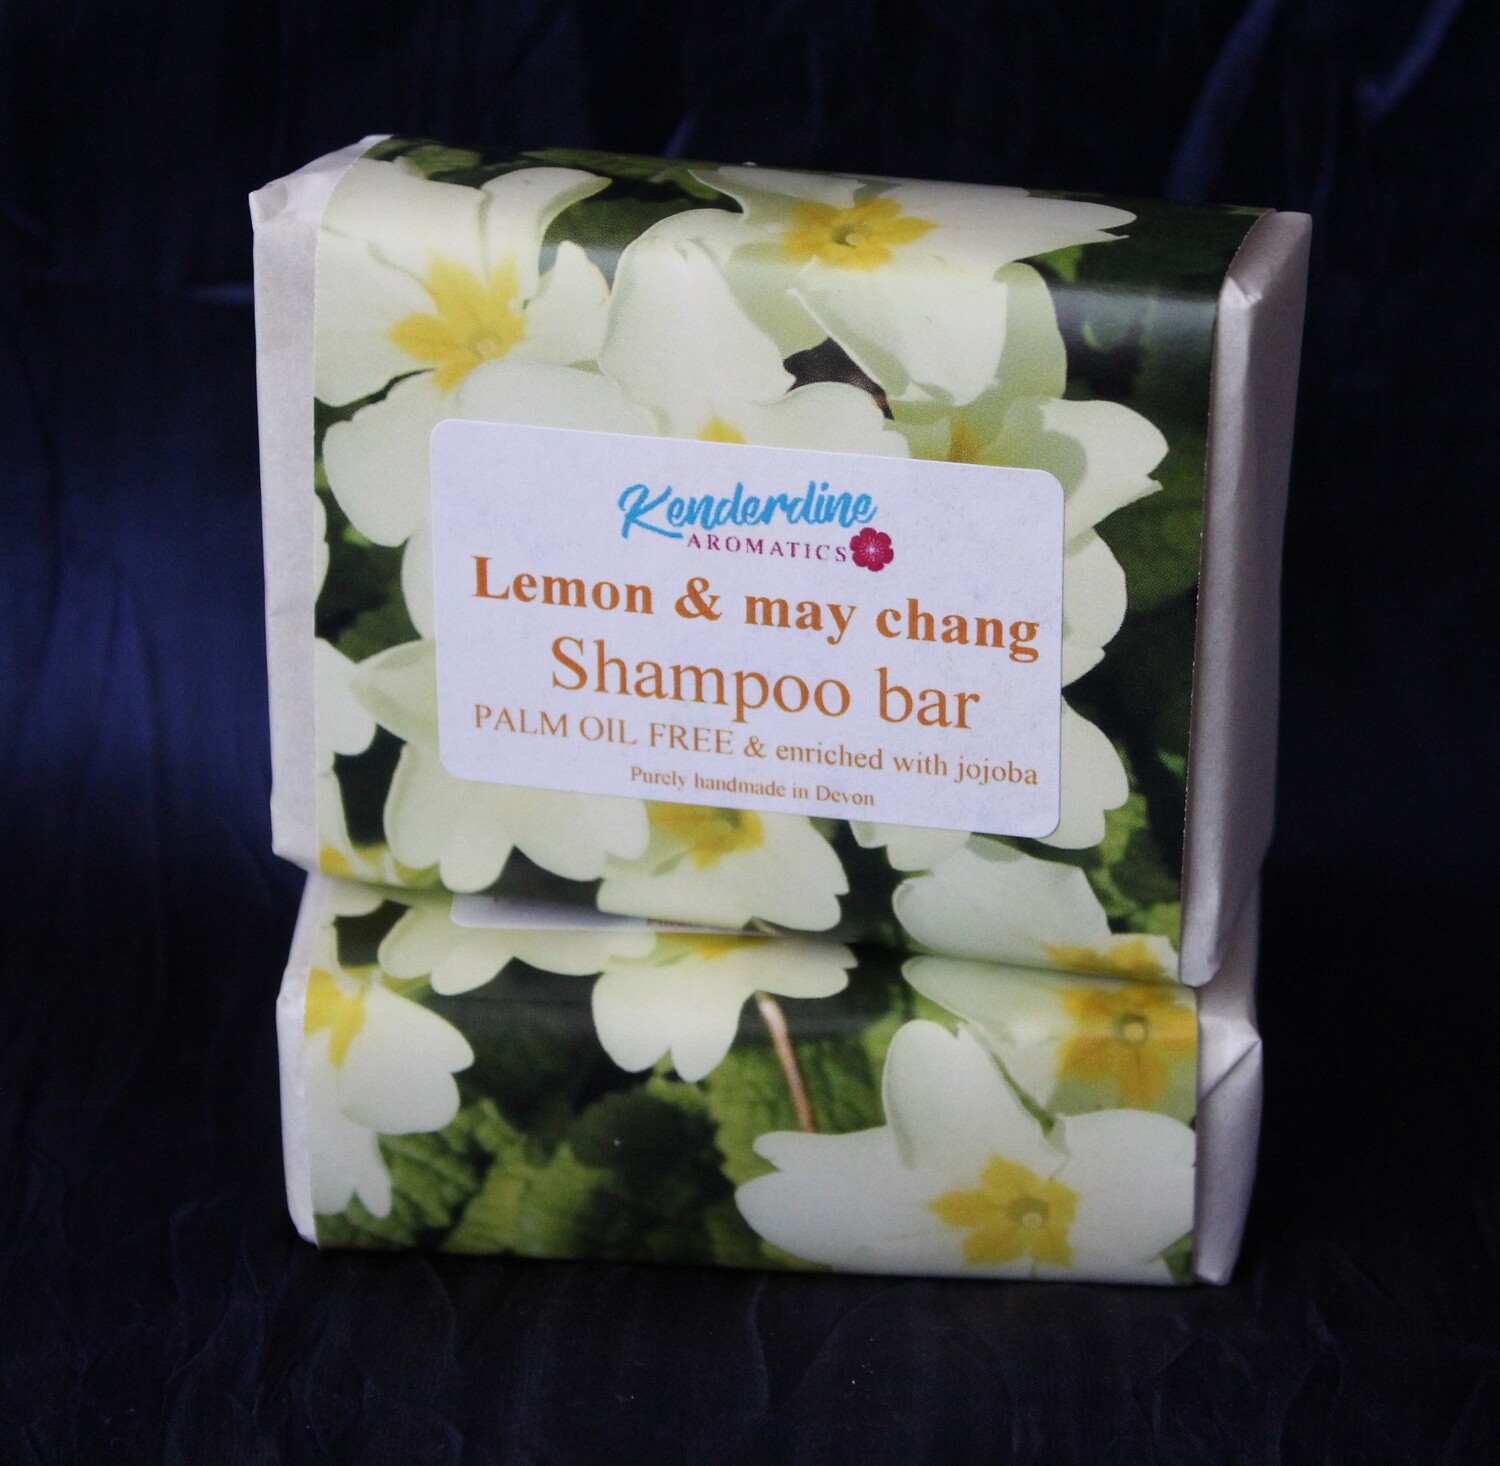 Shampoo bar - Lemon & may chang